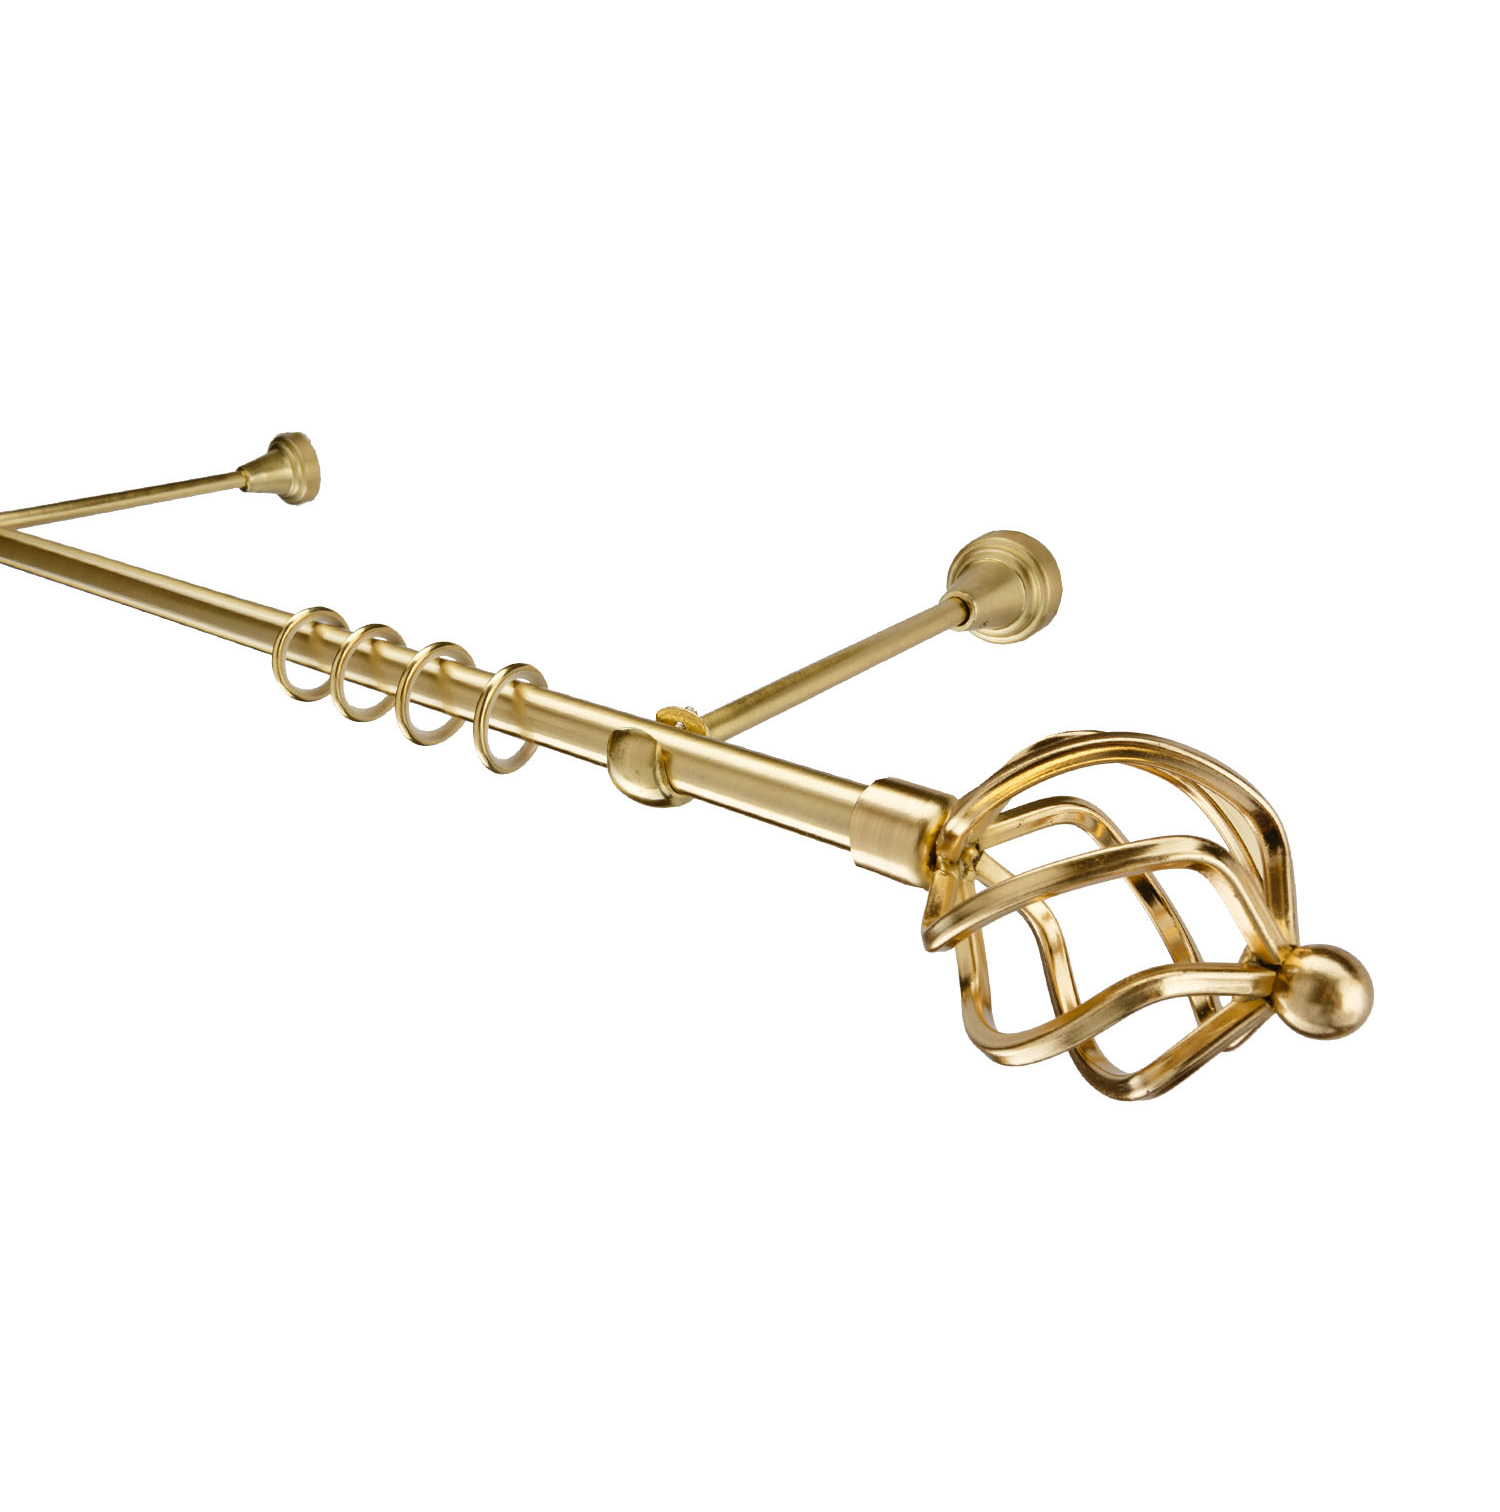 Металлический карниз для штор Солярис, однорядный 16 мм, золото, гладкая штанга, длина 200 см